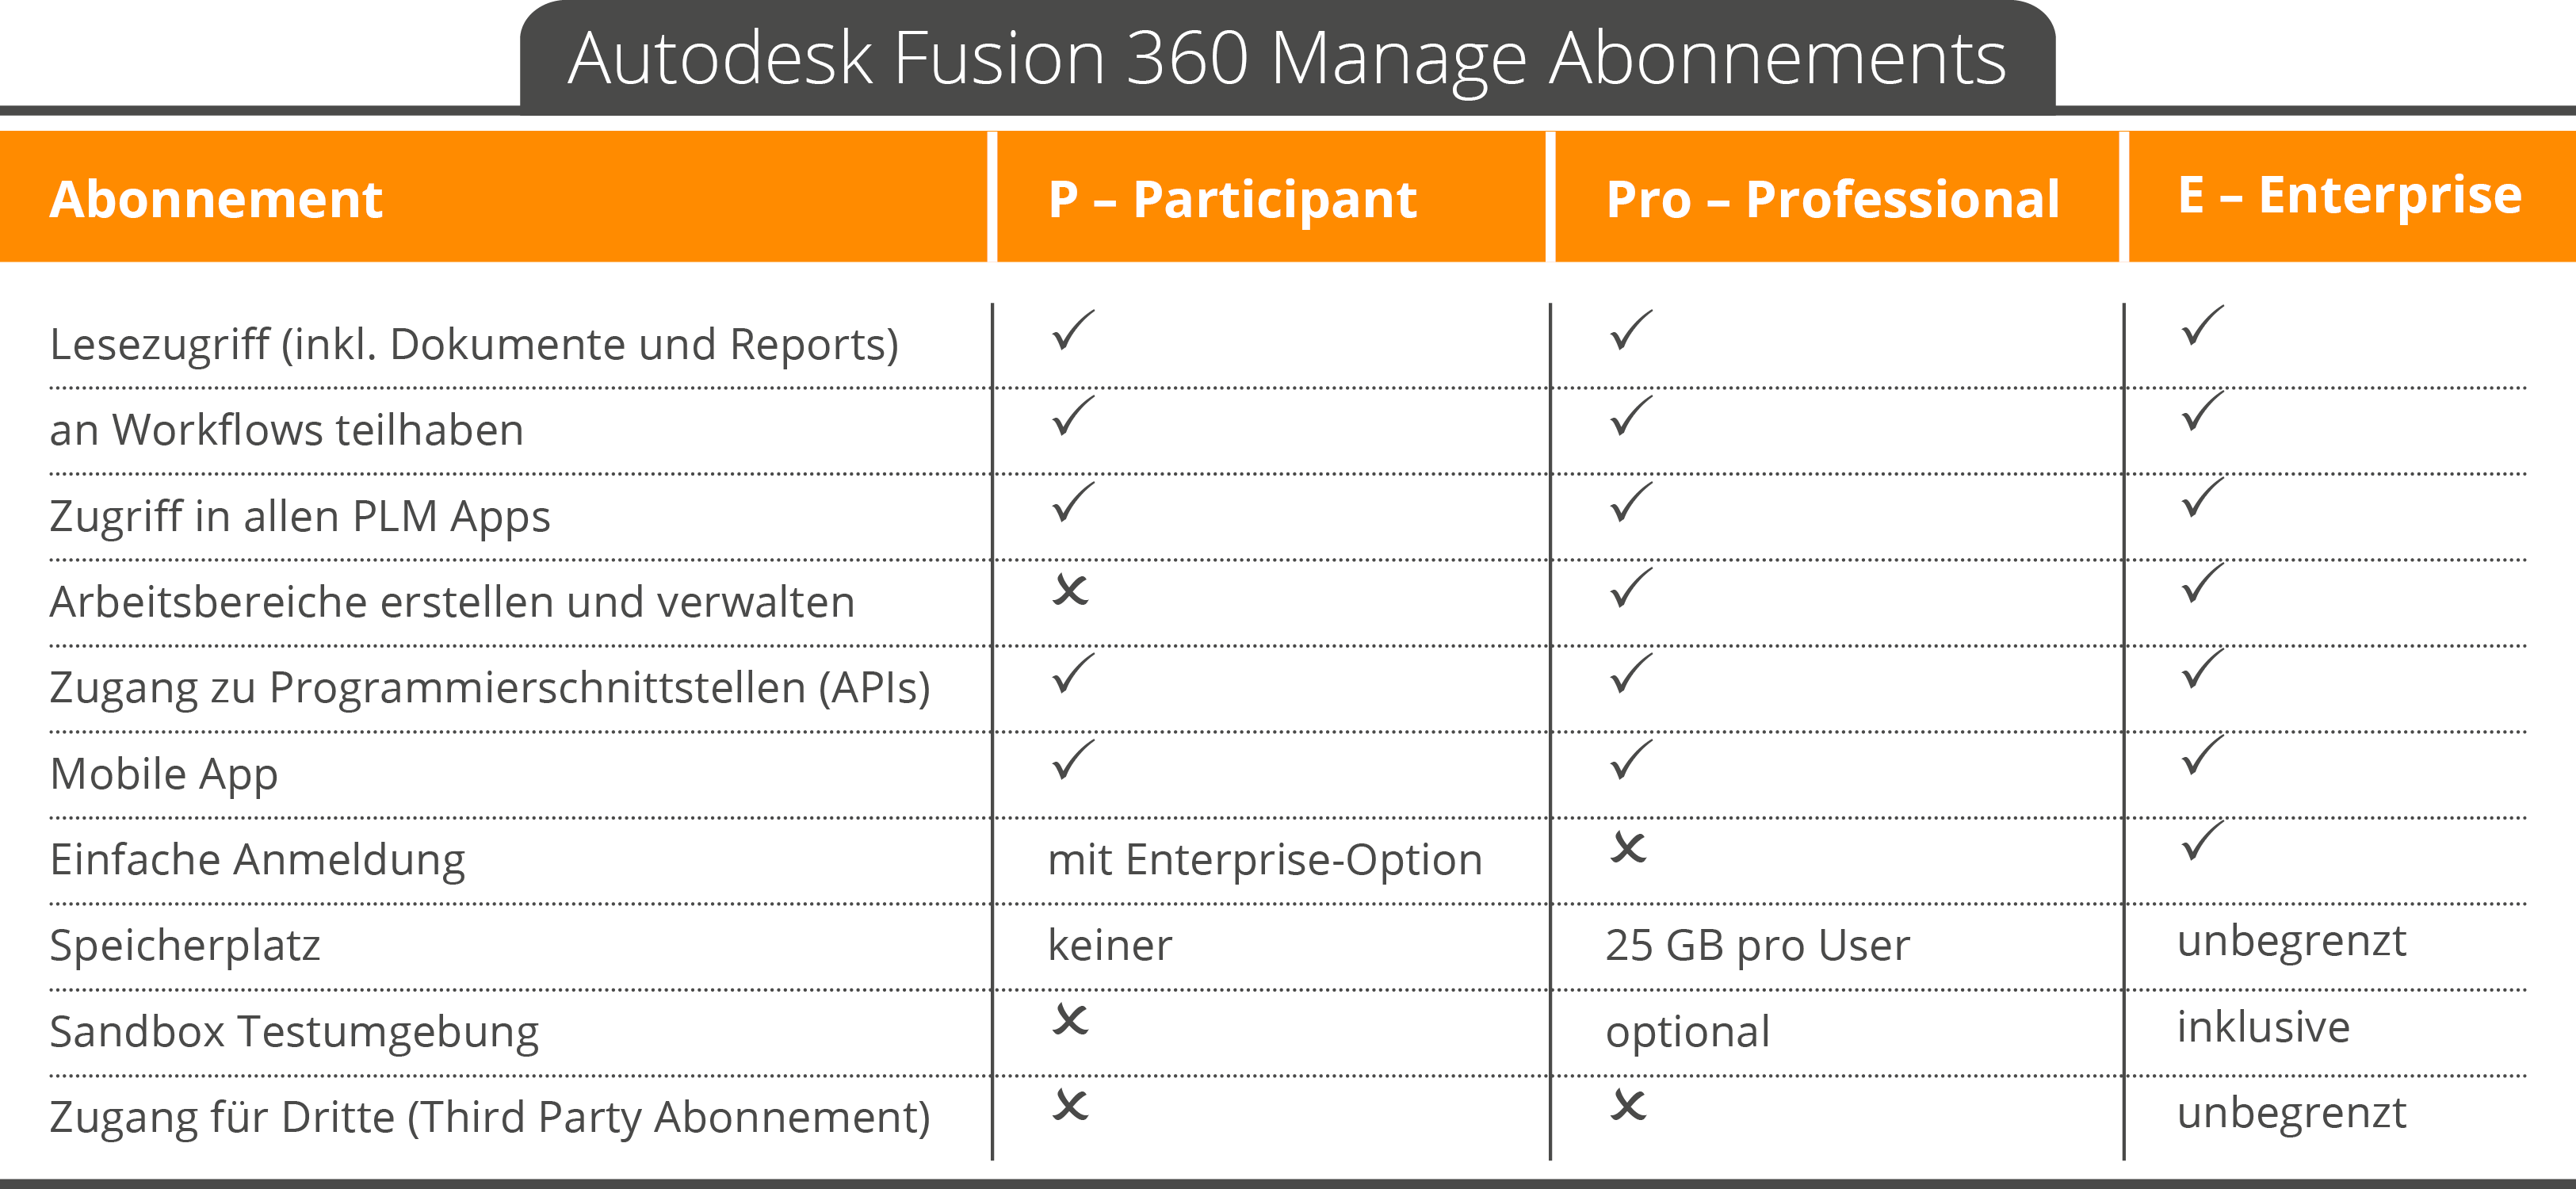 Autodesk Fusion 360 Manage - Abomöglichkeiten